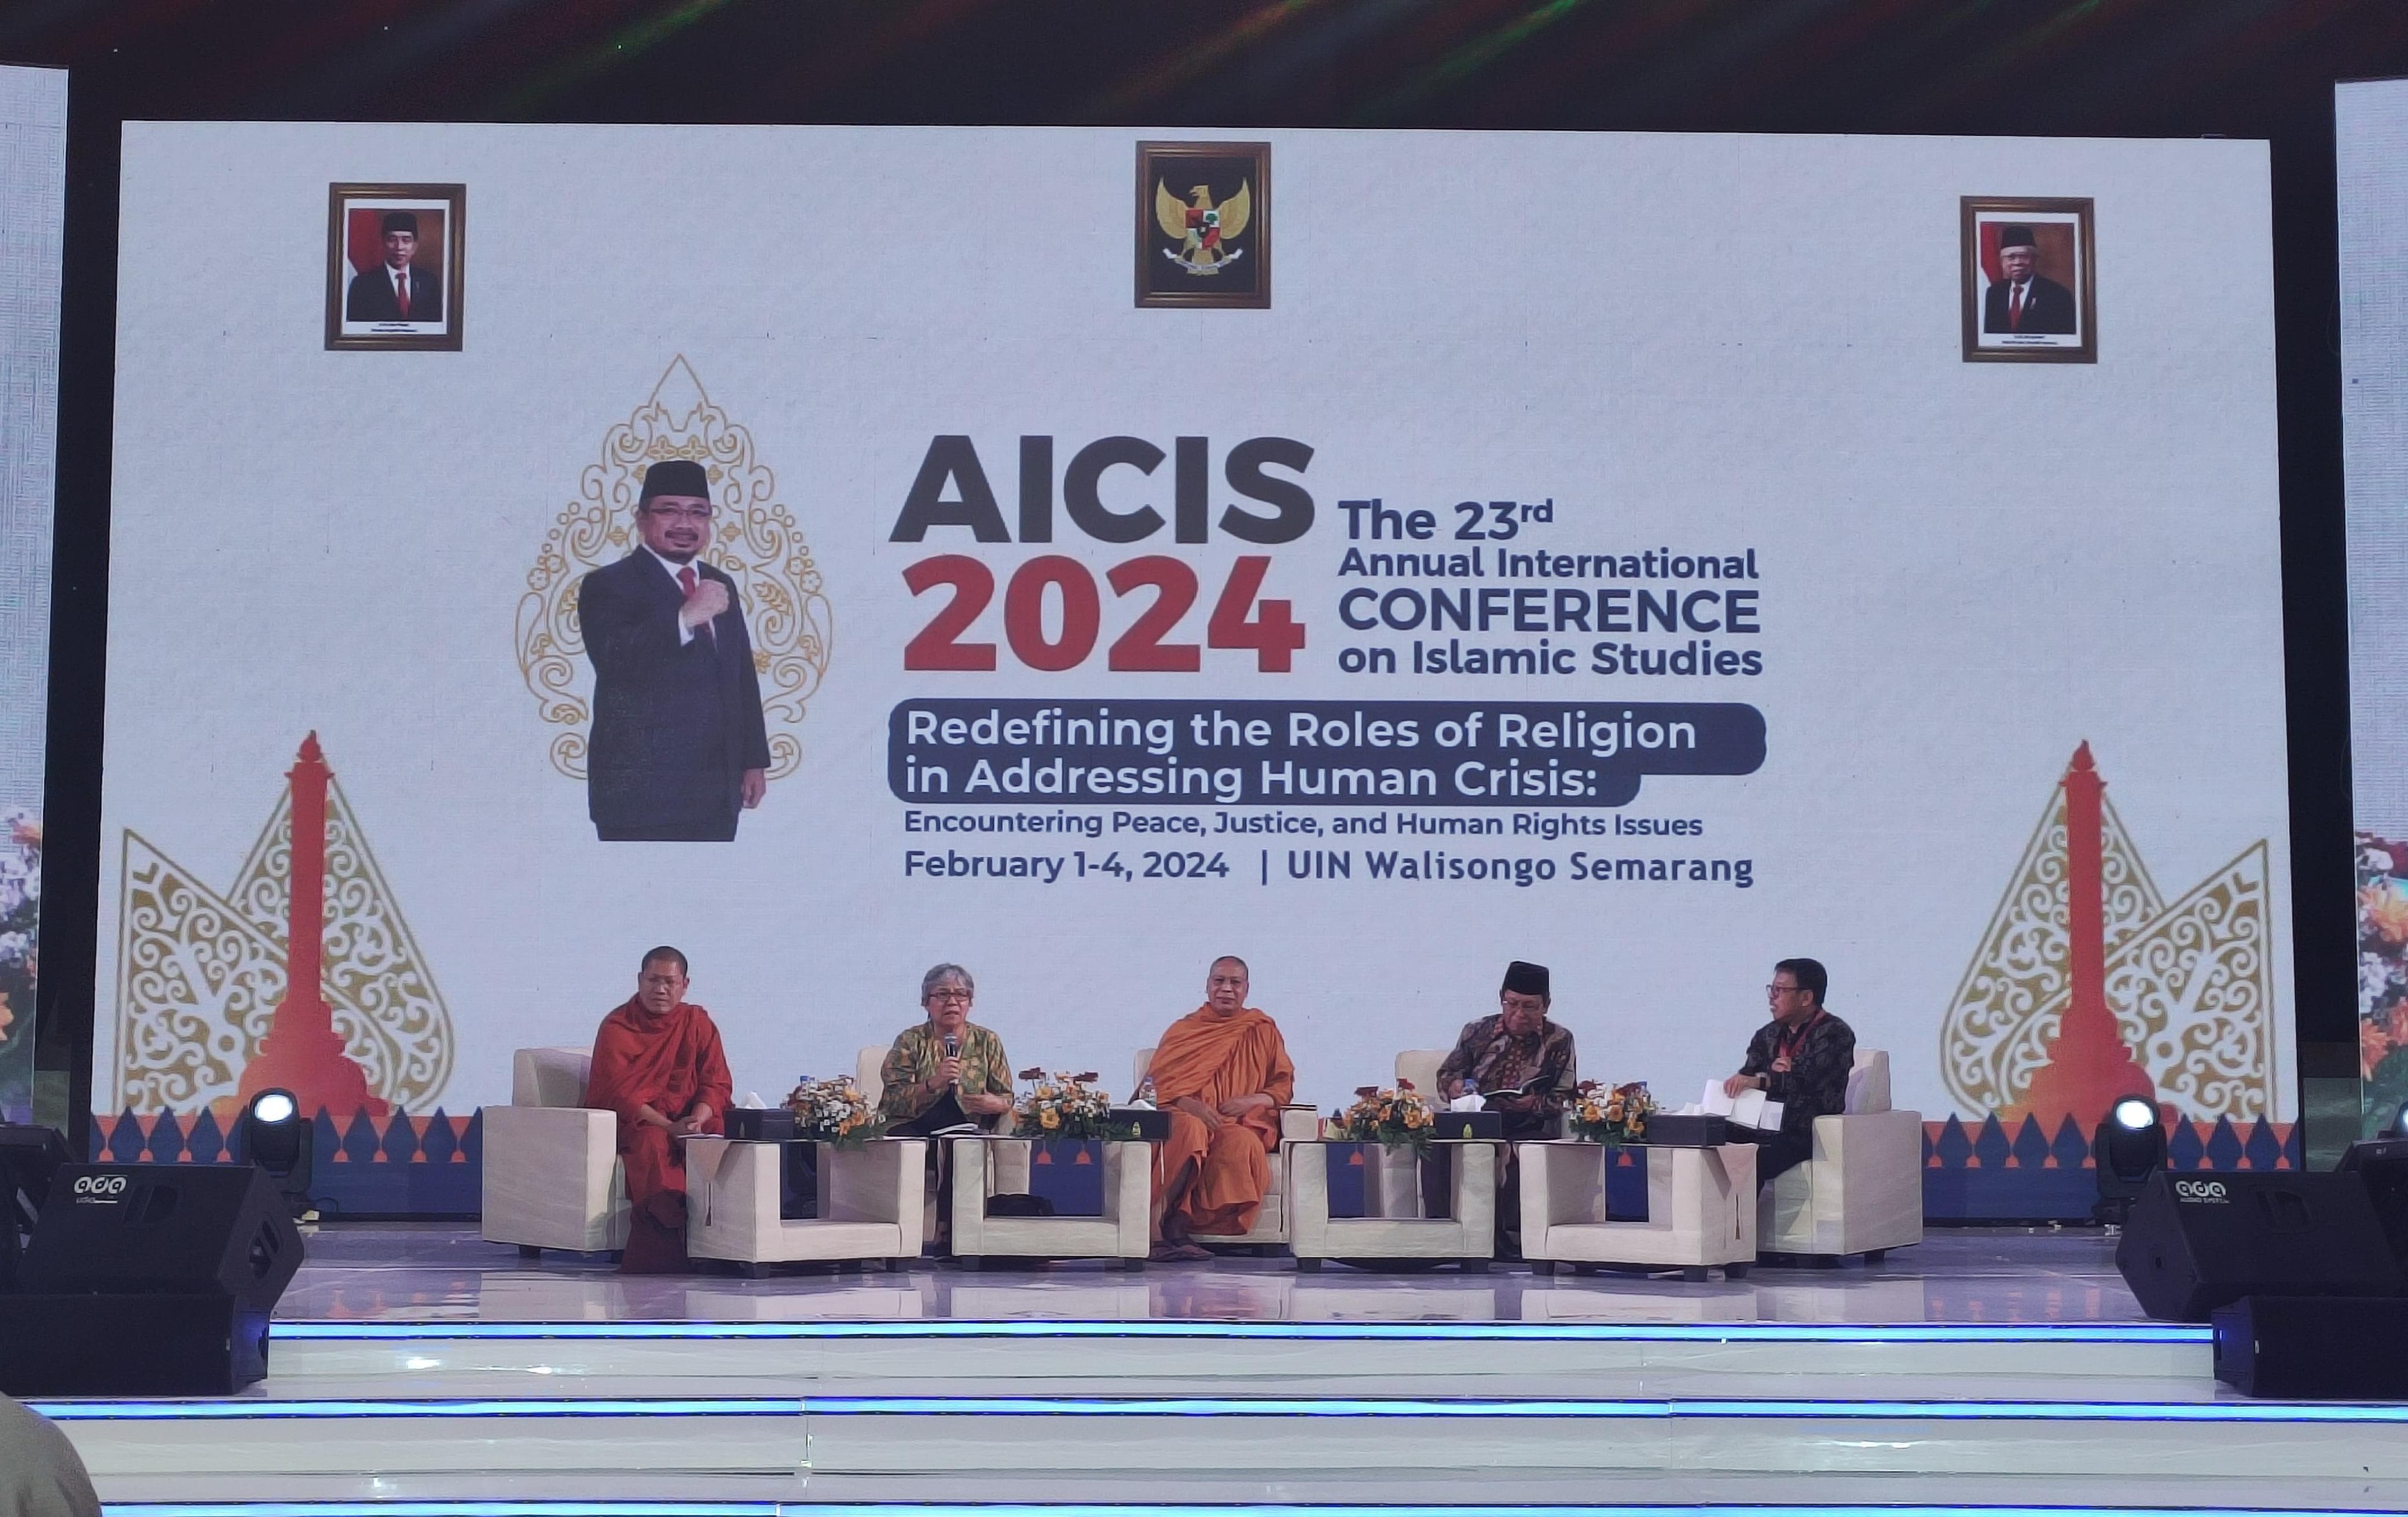 On Stage Discussion AICIS 2024: Refleksi dan Praktik Terbaik dalam Mengatasi Krisis Kemanusiaan